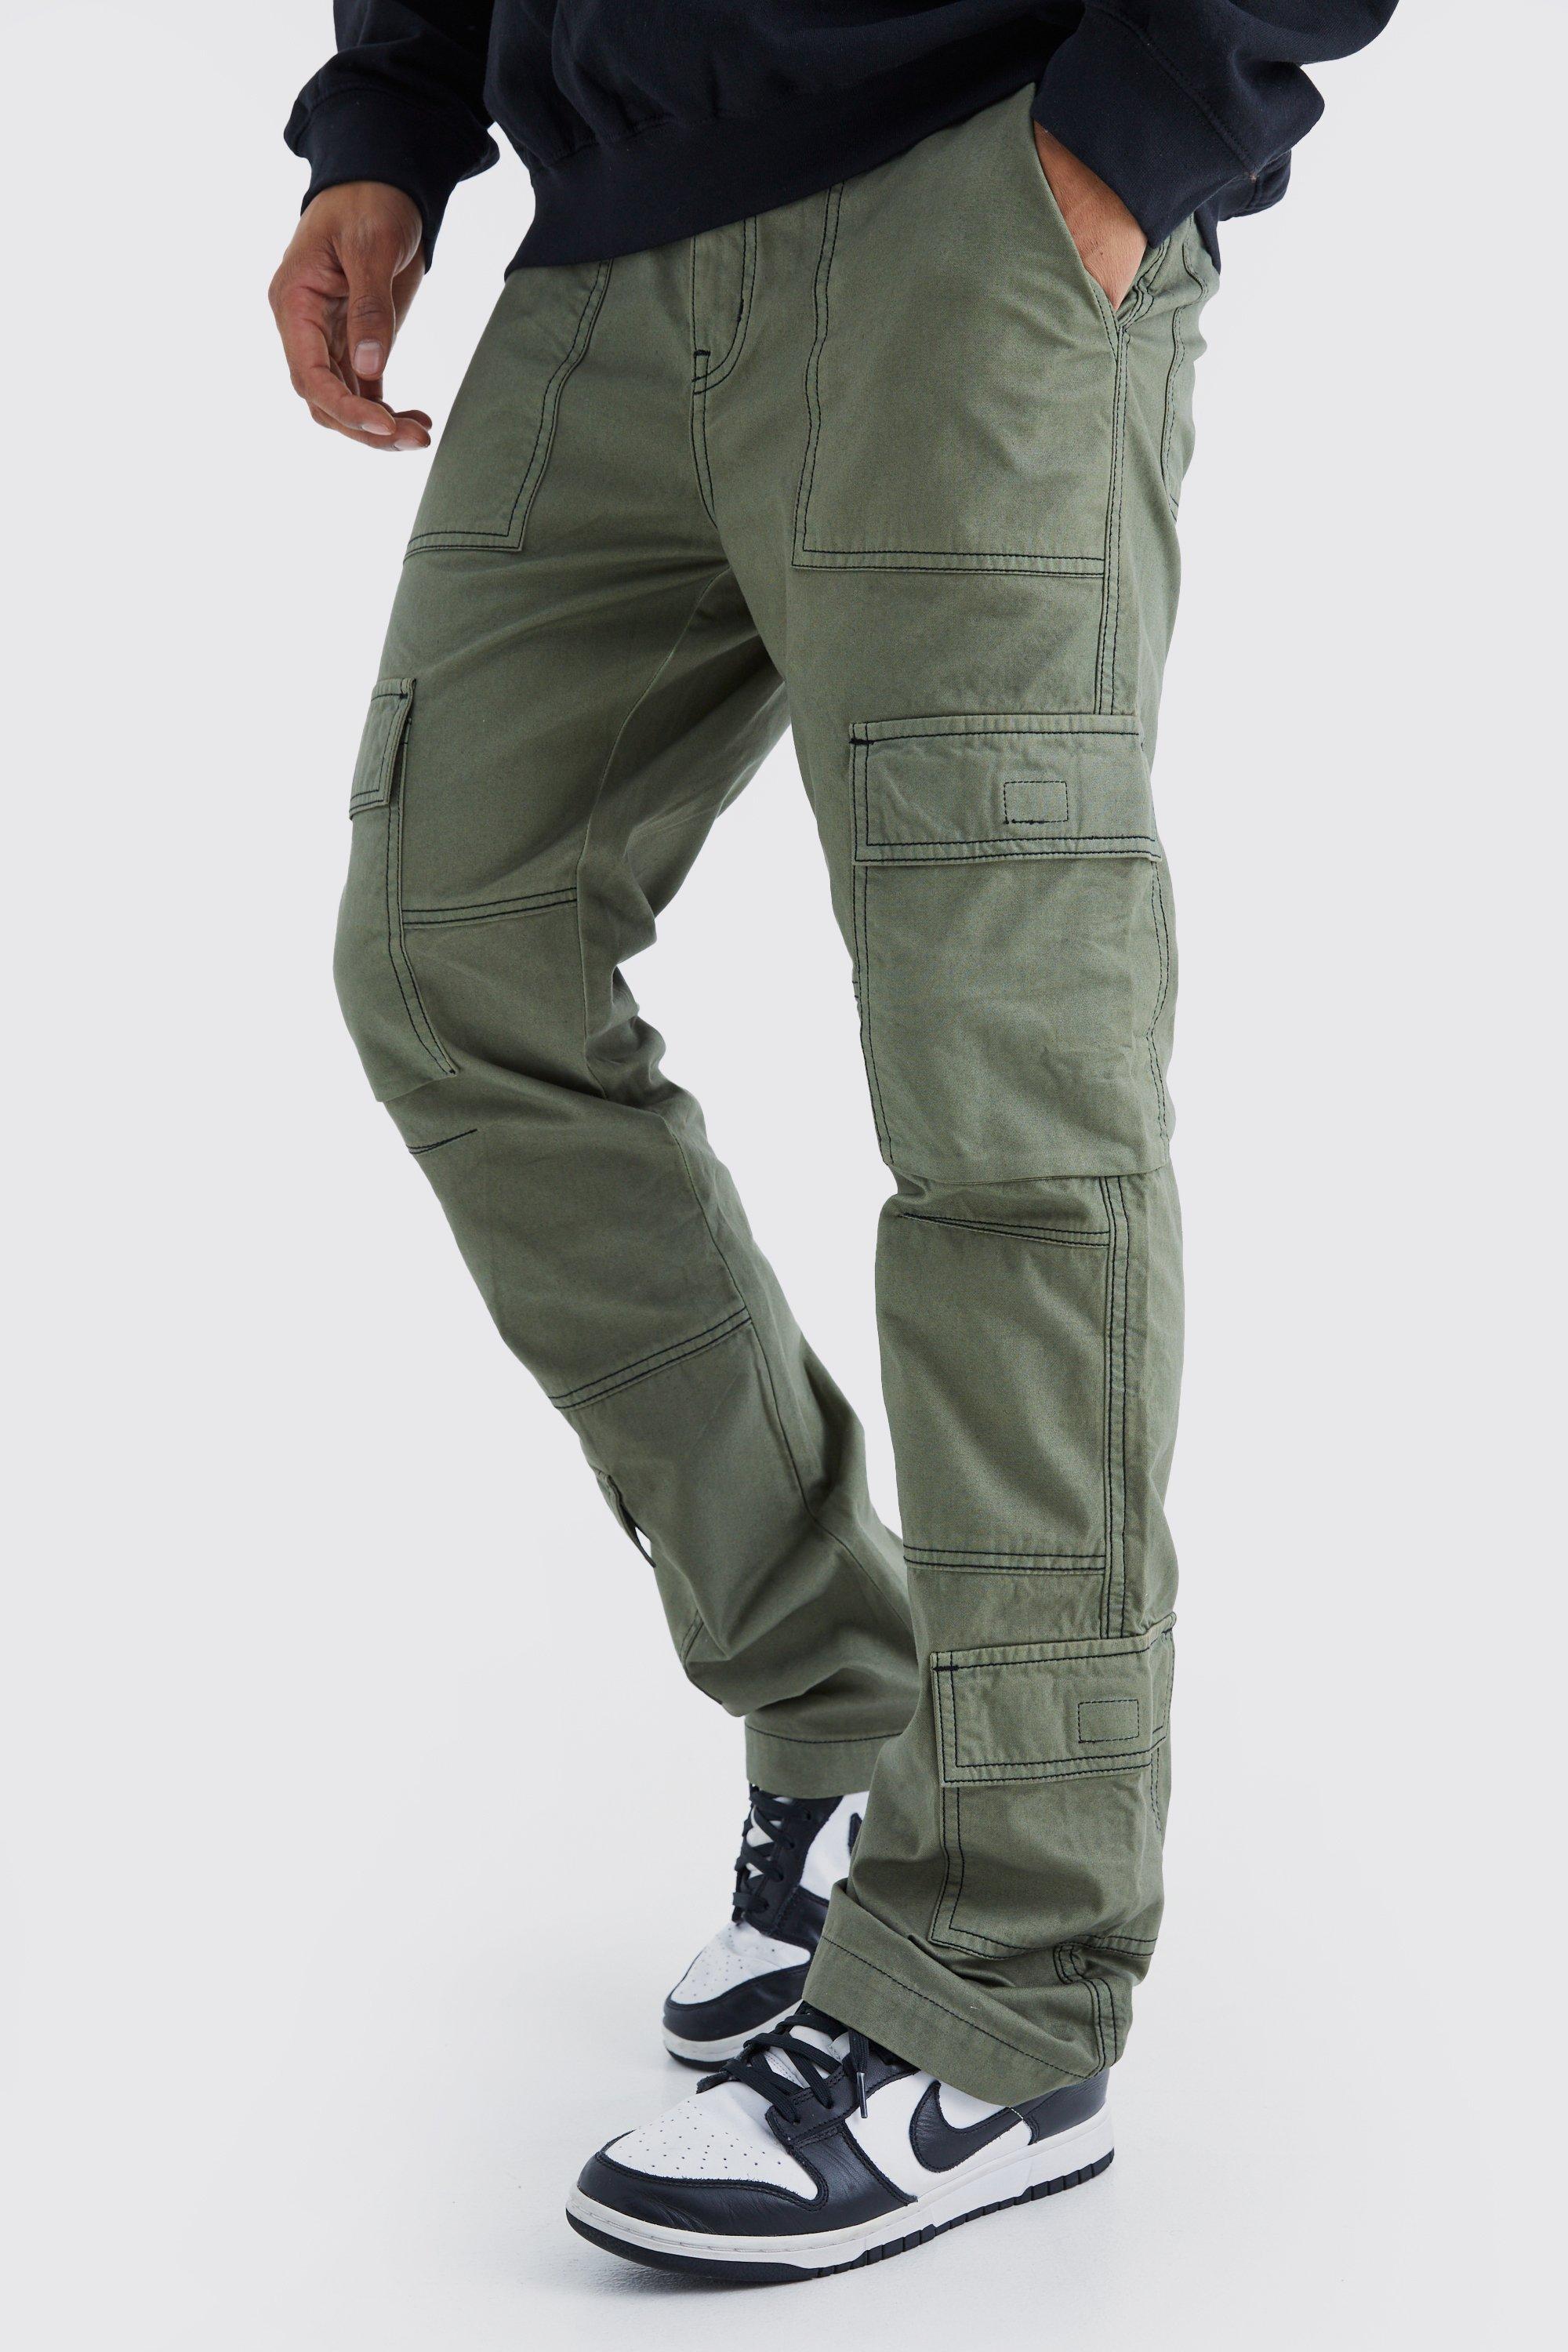 pantalon cargo slim à coutures contrastantes homme - kaki - 34, kaki